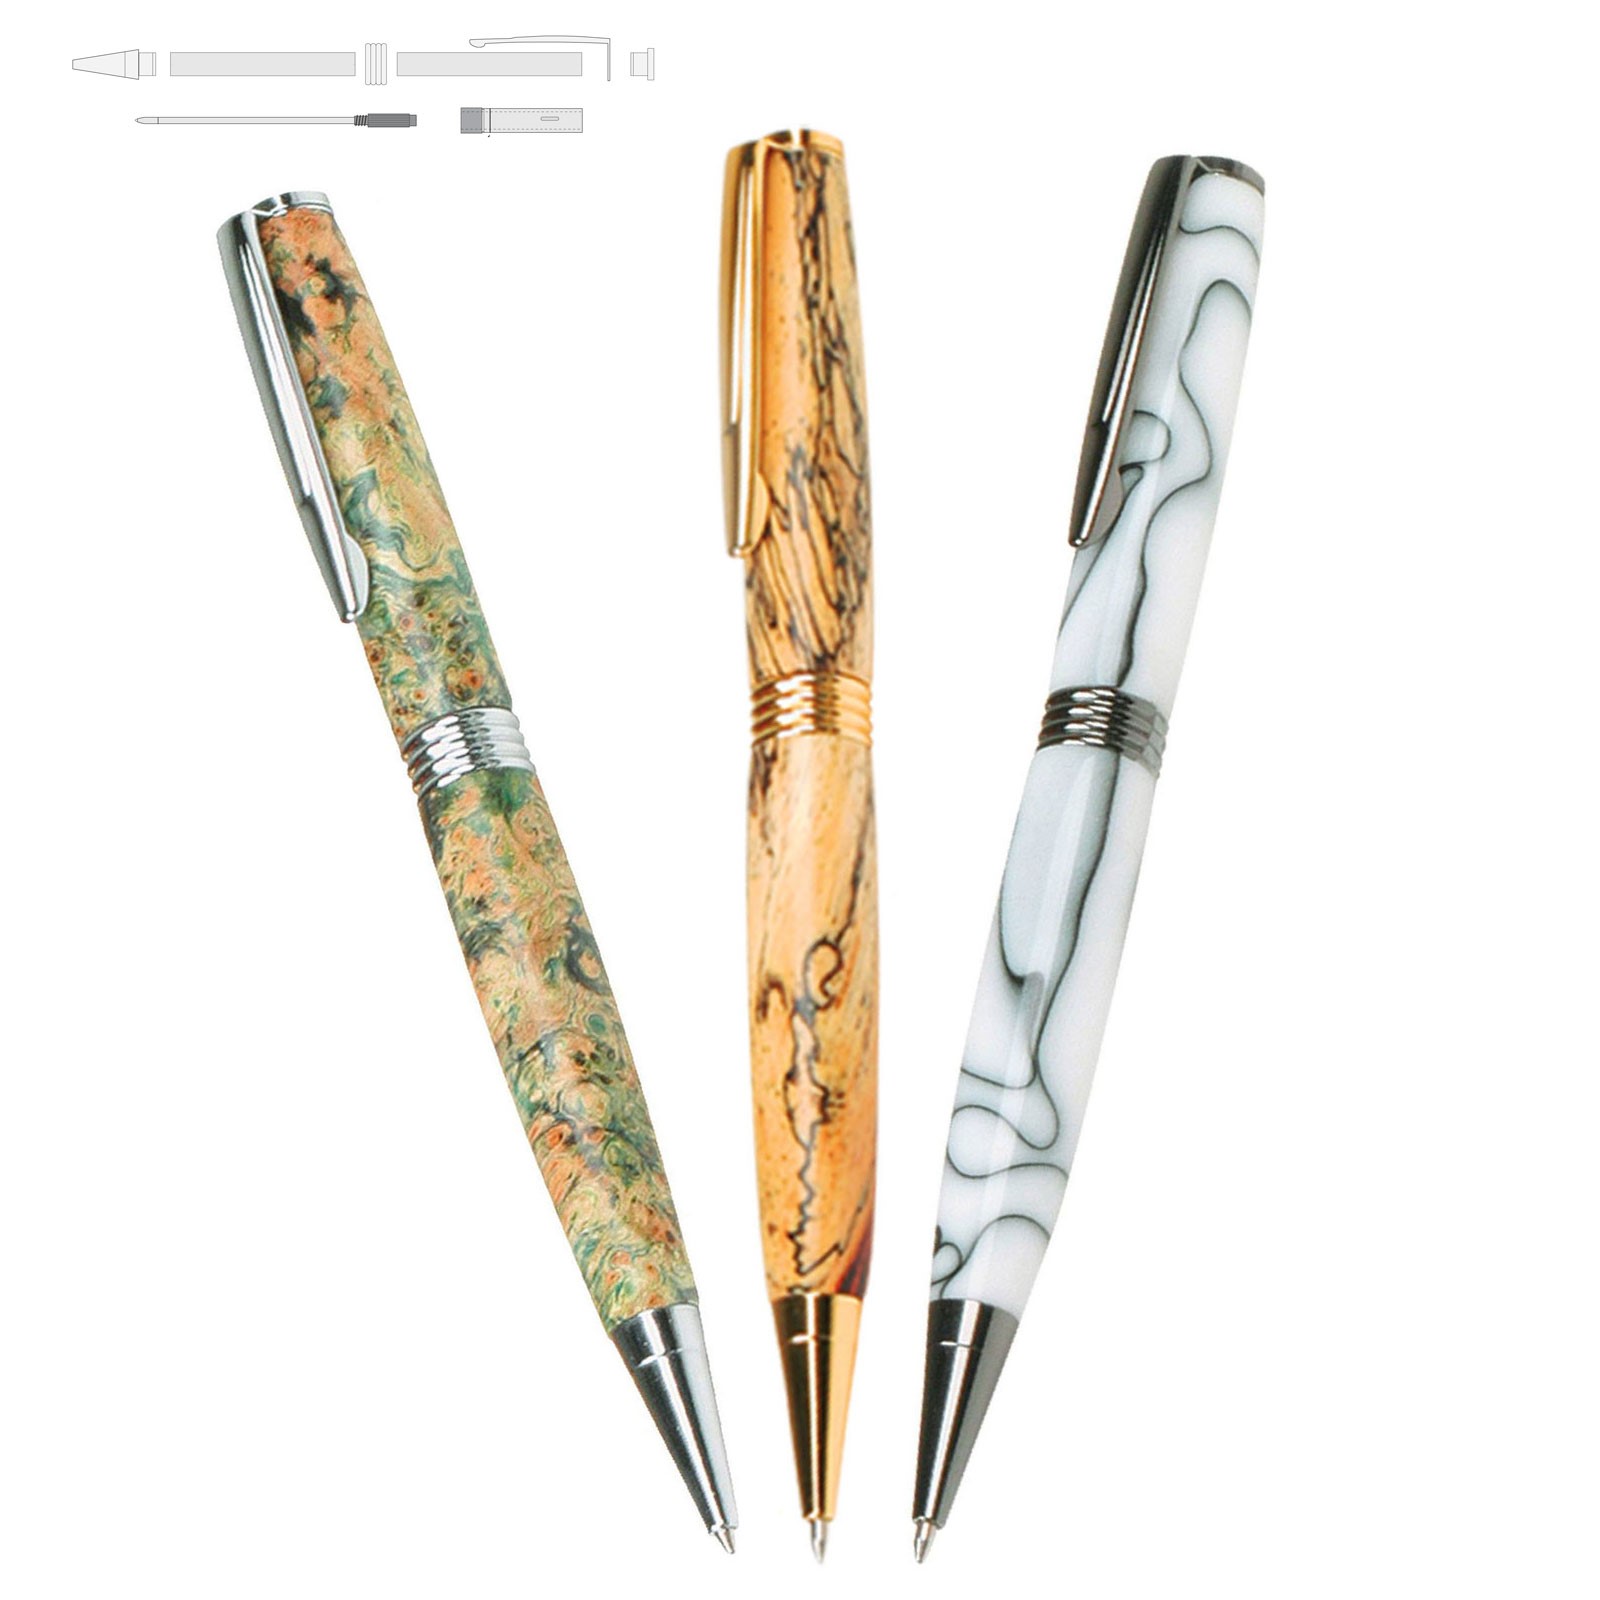 14 Slimline Pen Kit Variety Pack